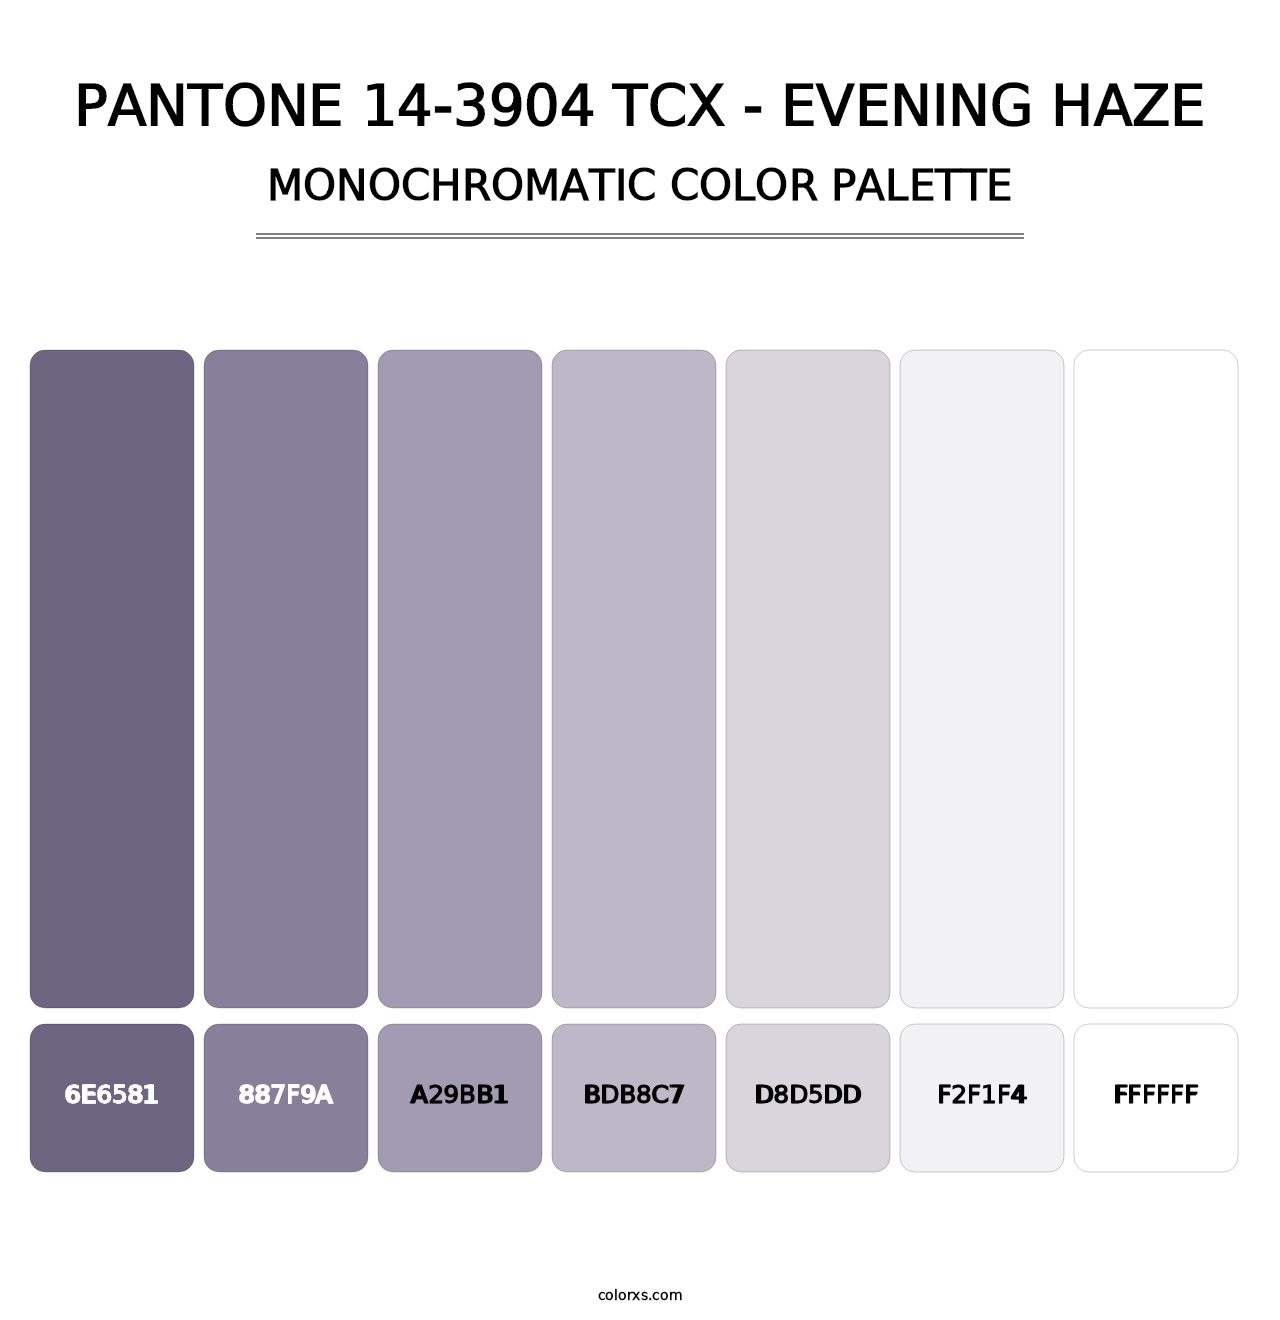 PANTONE 14-3904 TCX - Evening Haze - Monochromatic Color Palette